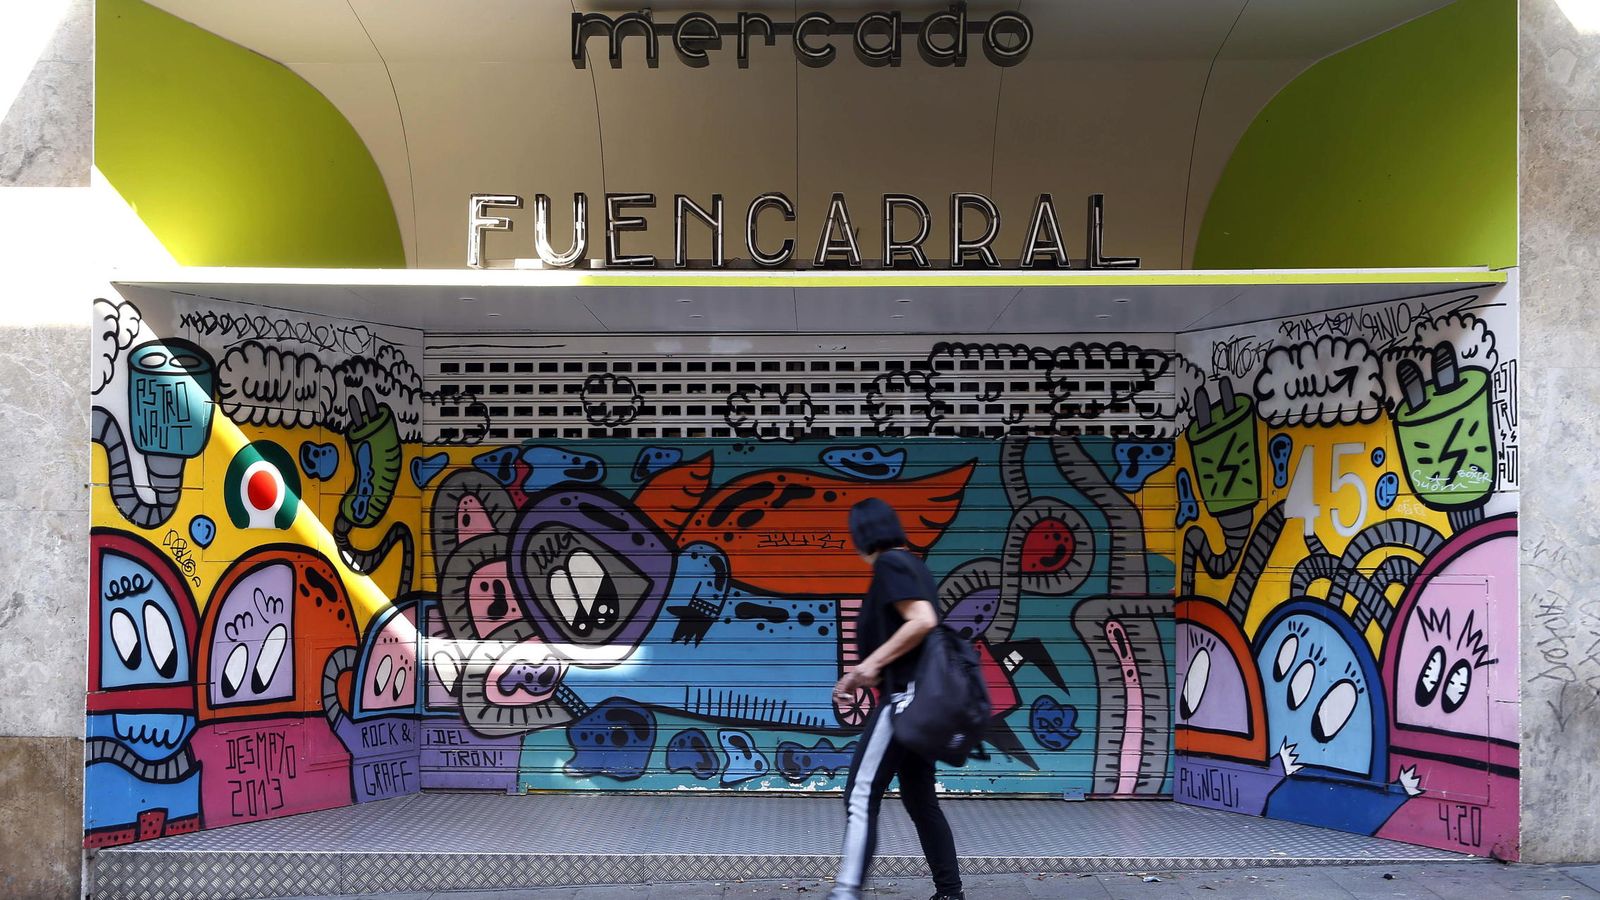 Foto: El Mercado Fuencarral echó definitivamente la persiana hace un año.